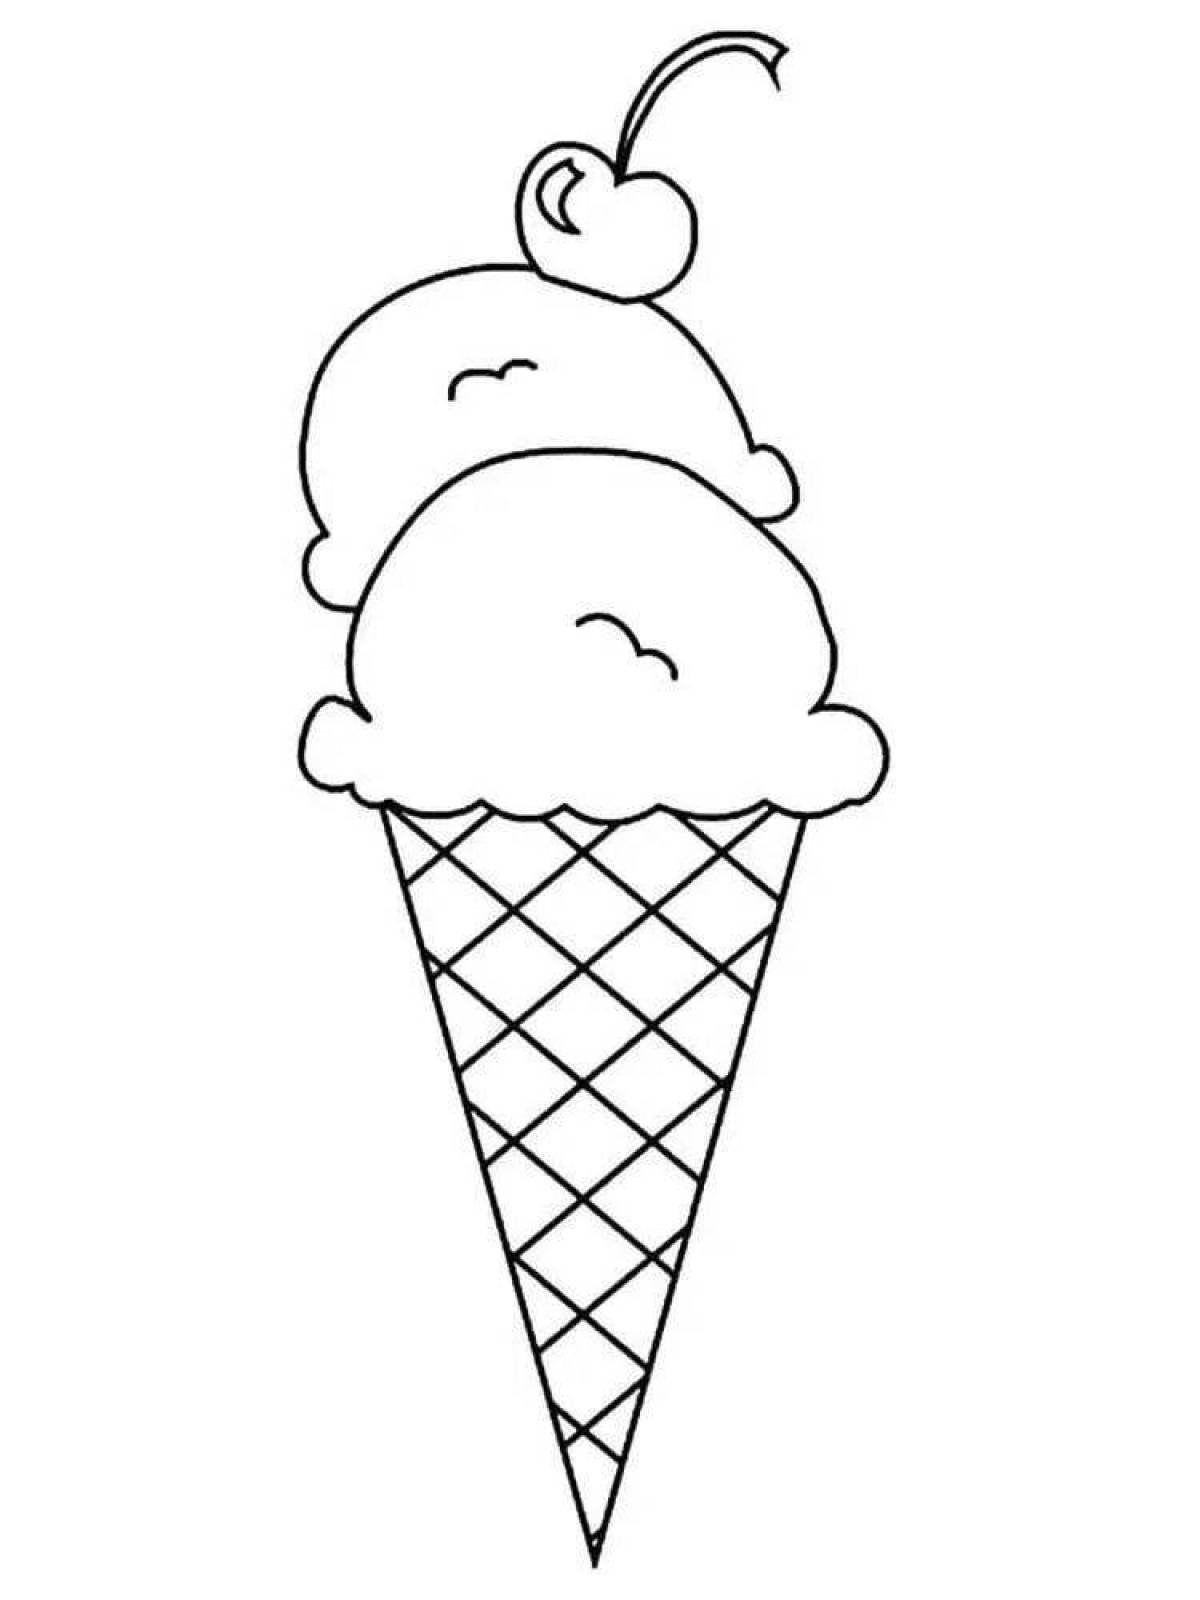 Раскраска мороженки. Раскраска мороженое. Раскраска МО РО же но е. Мороженое раскраска для детей. Трафарет мороженого.